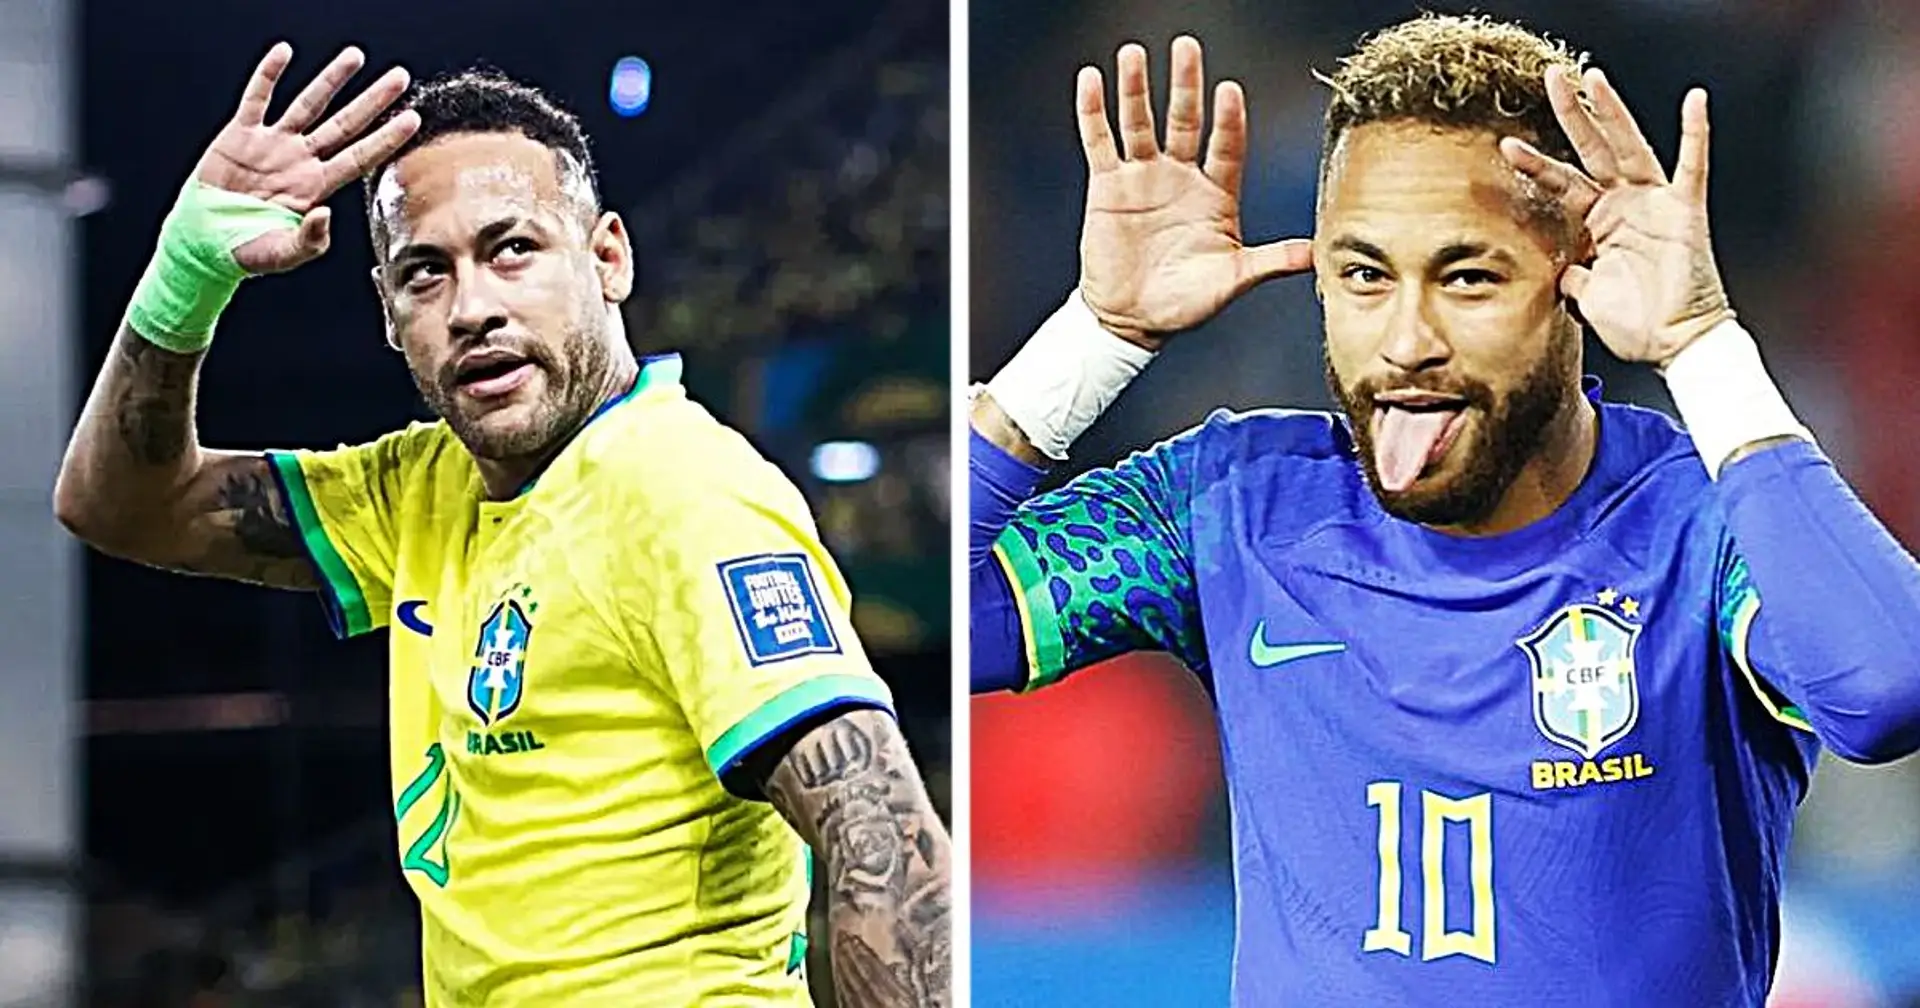 Neymar organise une croisière de trois jours avec des billets de 1 000 à 6 000 euros - le Brésilien ne joue pas en raison d'une blessure au genou